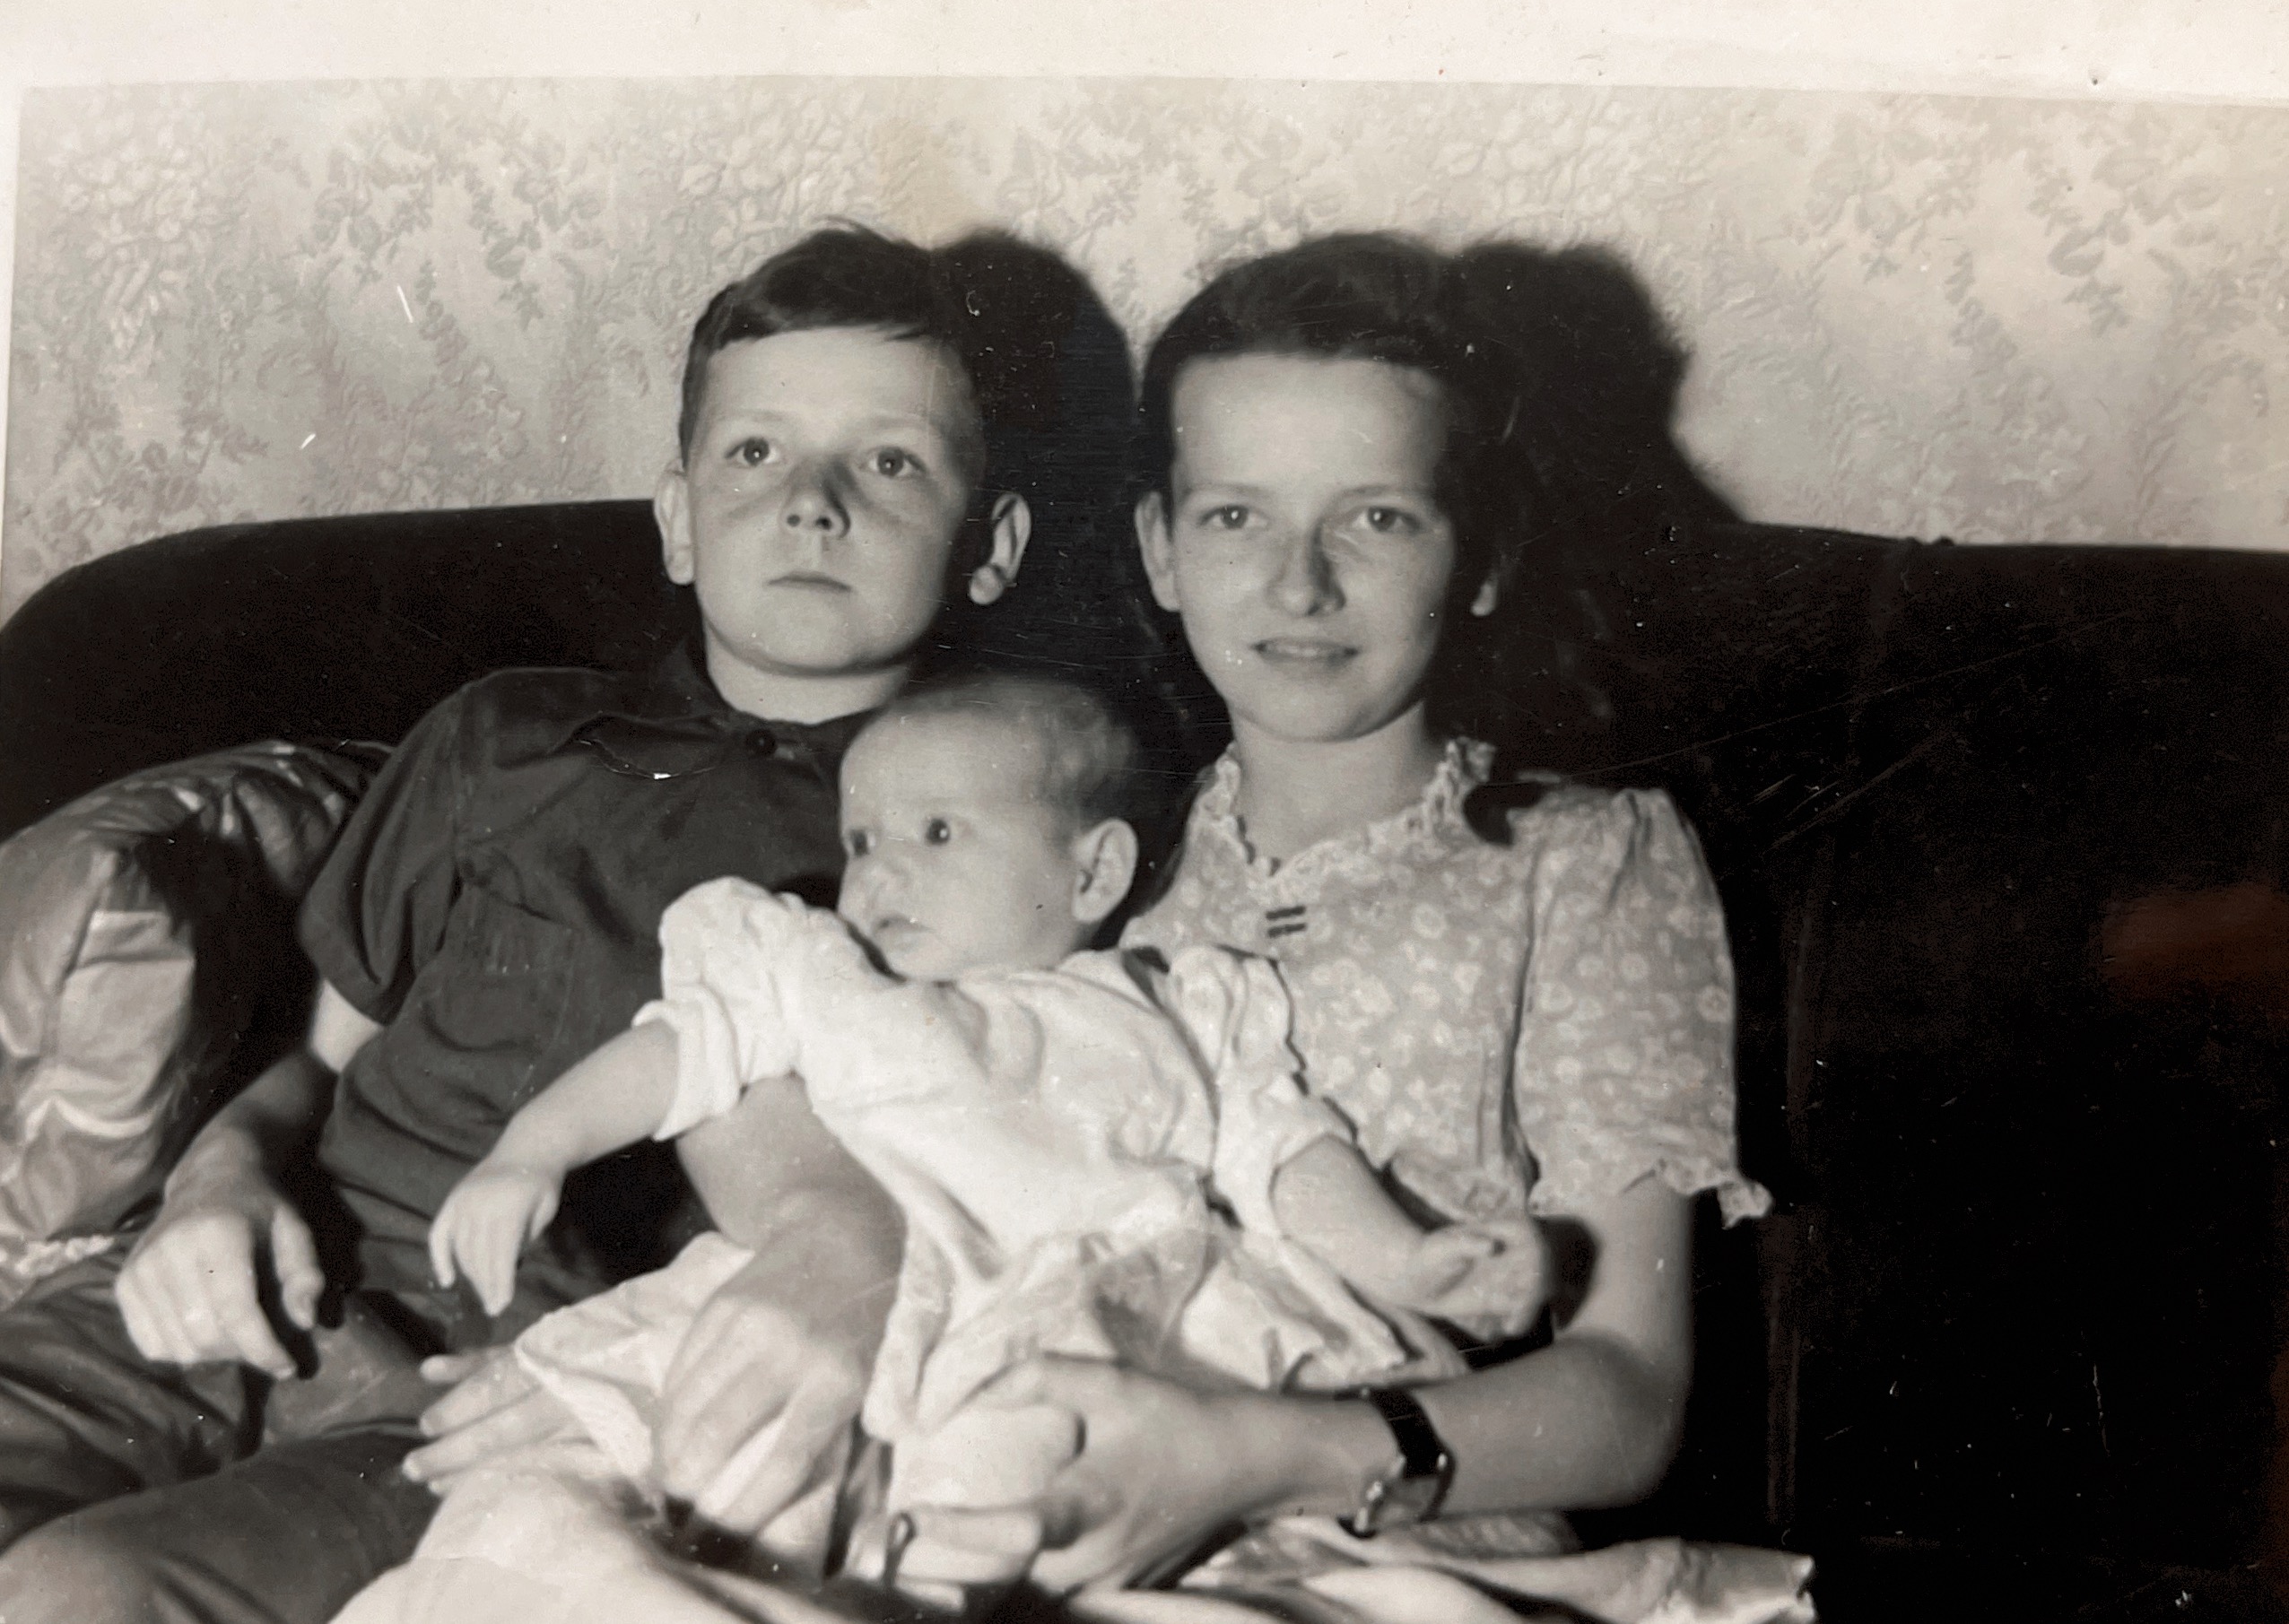 1943-siblings Hammond, IN